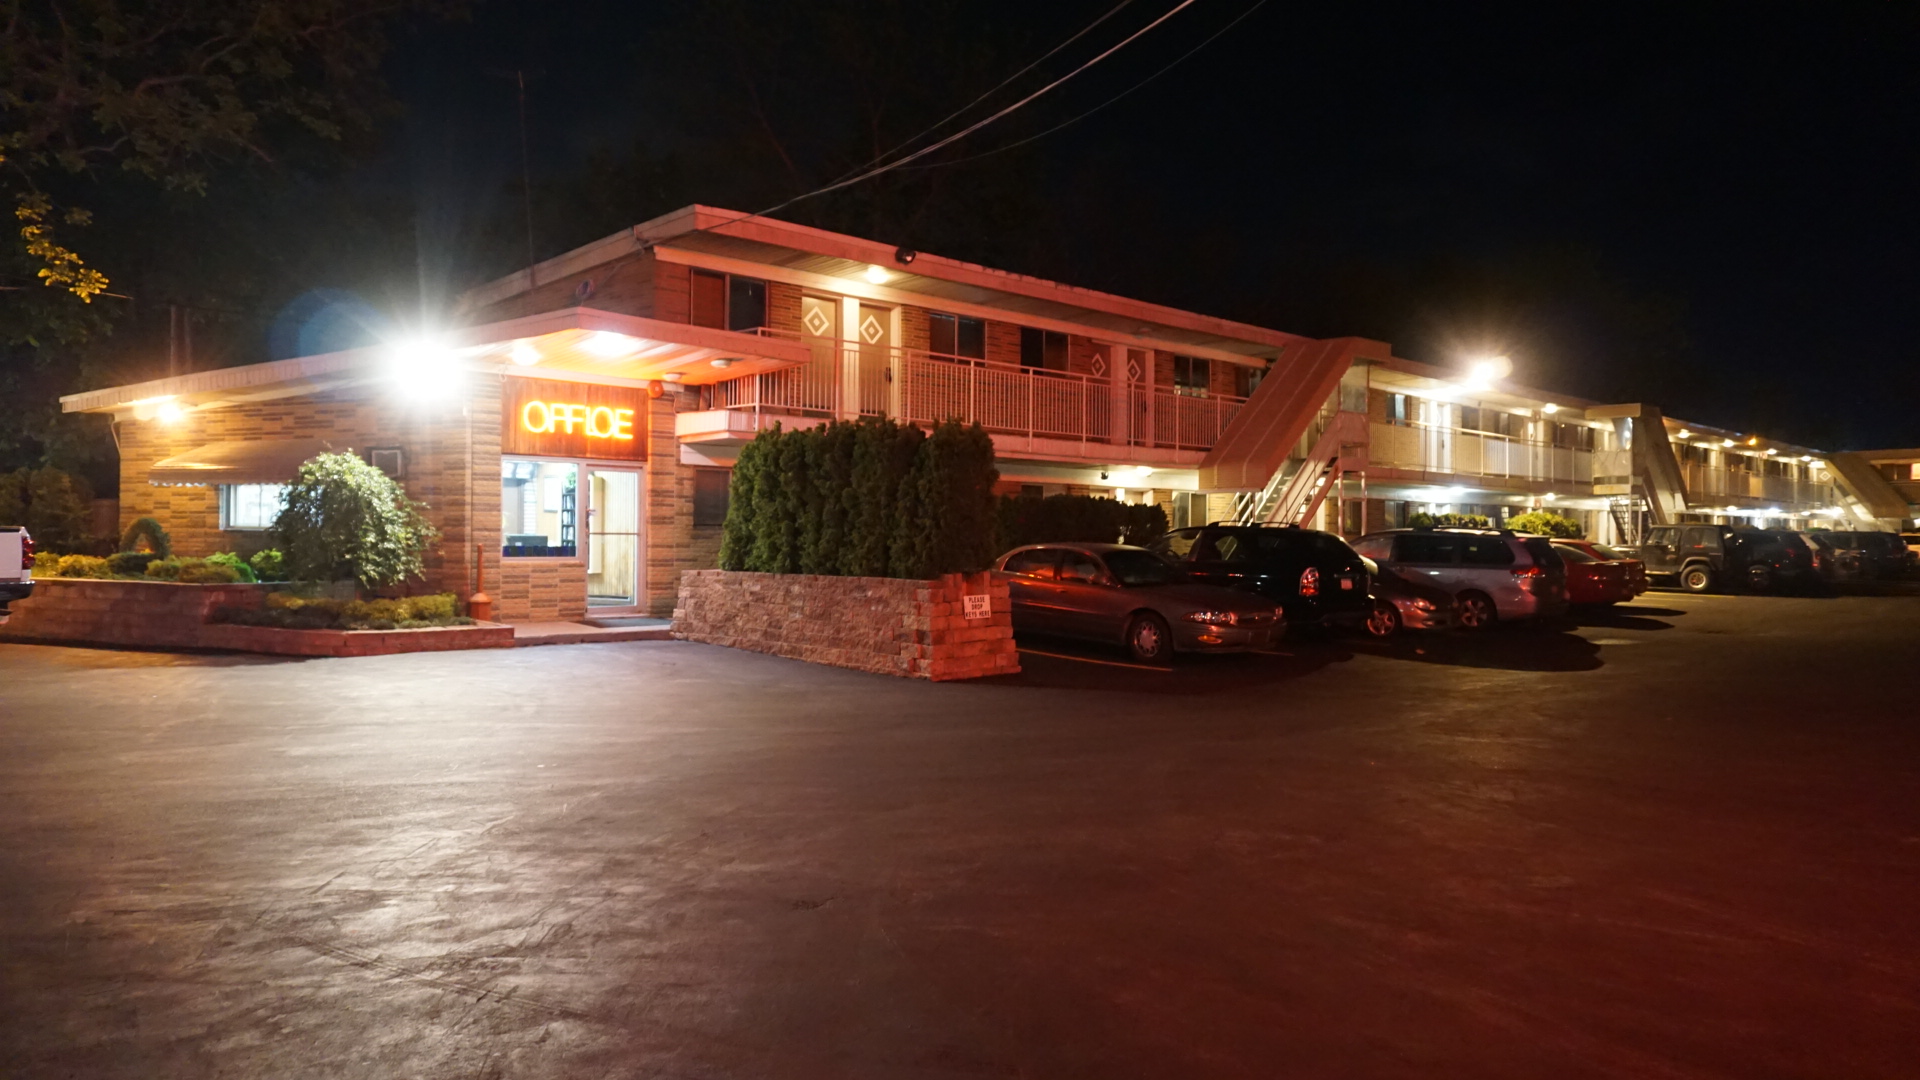 Edgewood Motel in Jericho, NY